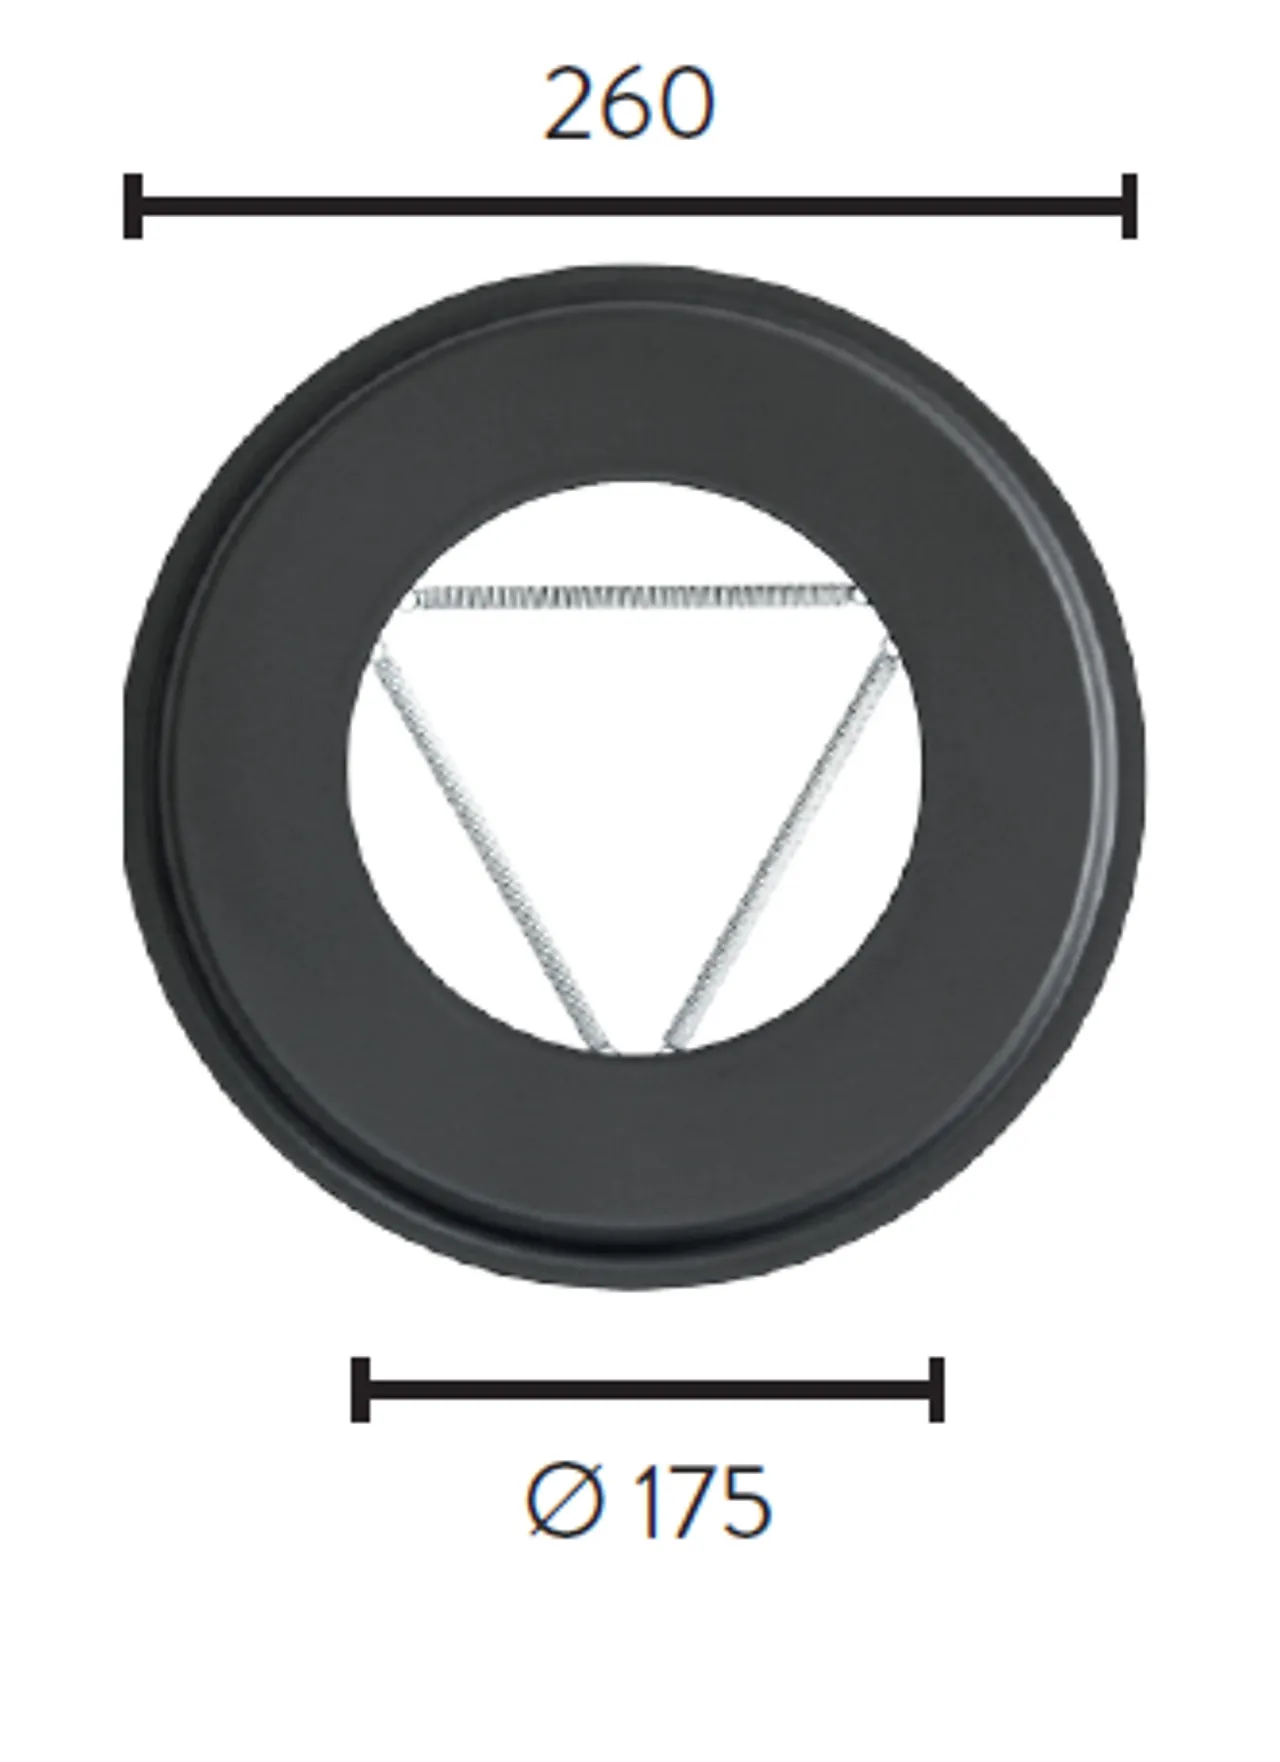 Pyntering ø175 ø260 utv sort mbe matt sort emalje 2,3mm